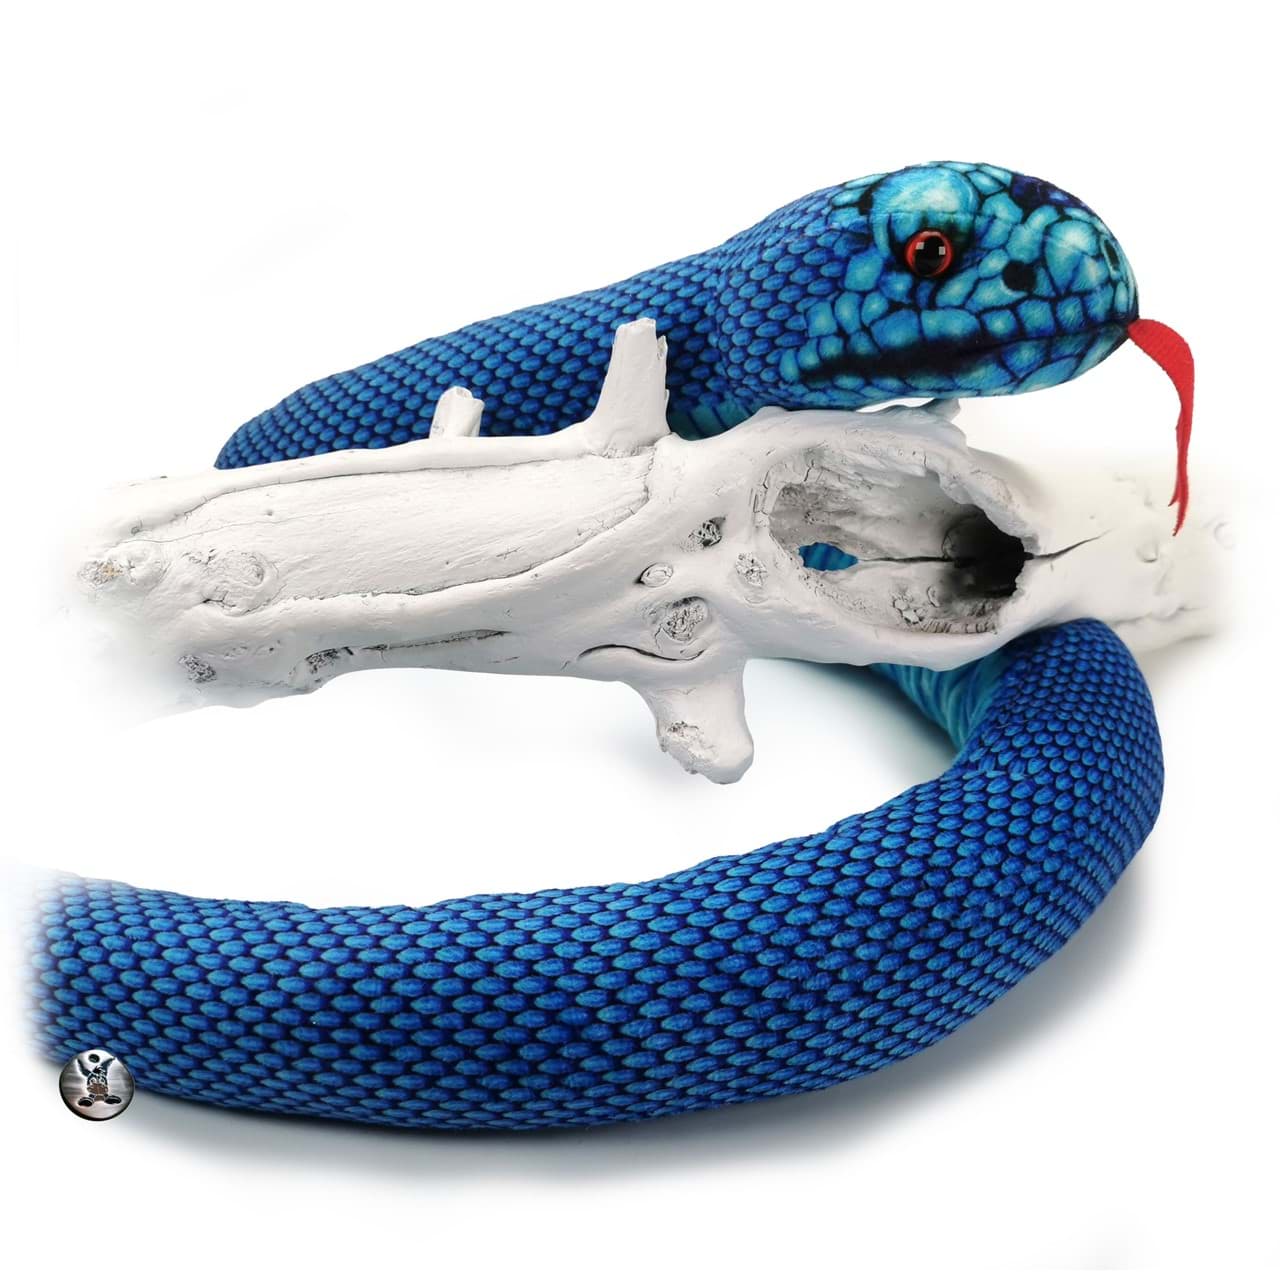 Bild von Grubenotter Kuscheltier Schlange blau Baumast Viper 150 cm Plüschschlange TOXICO